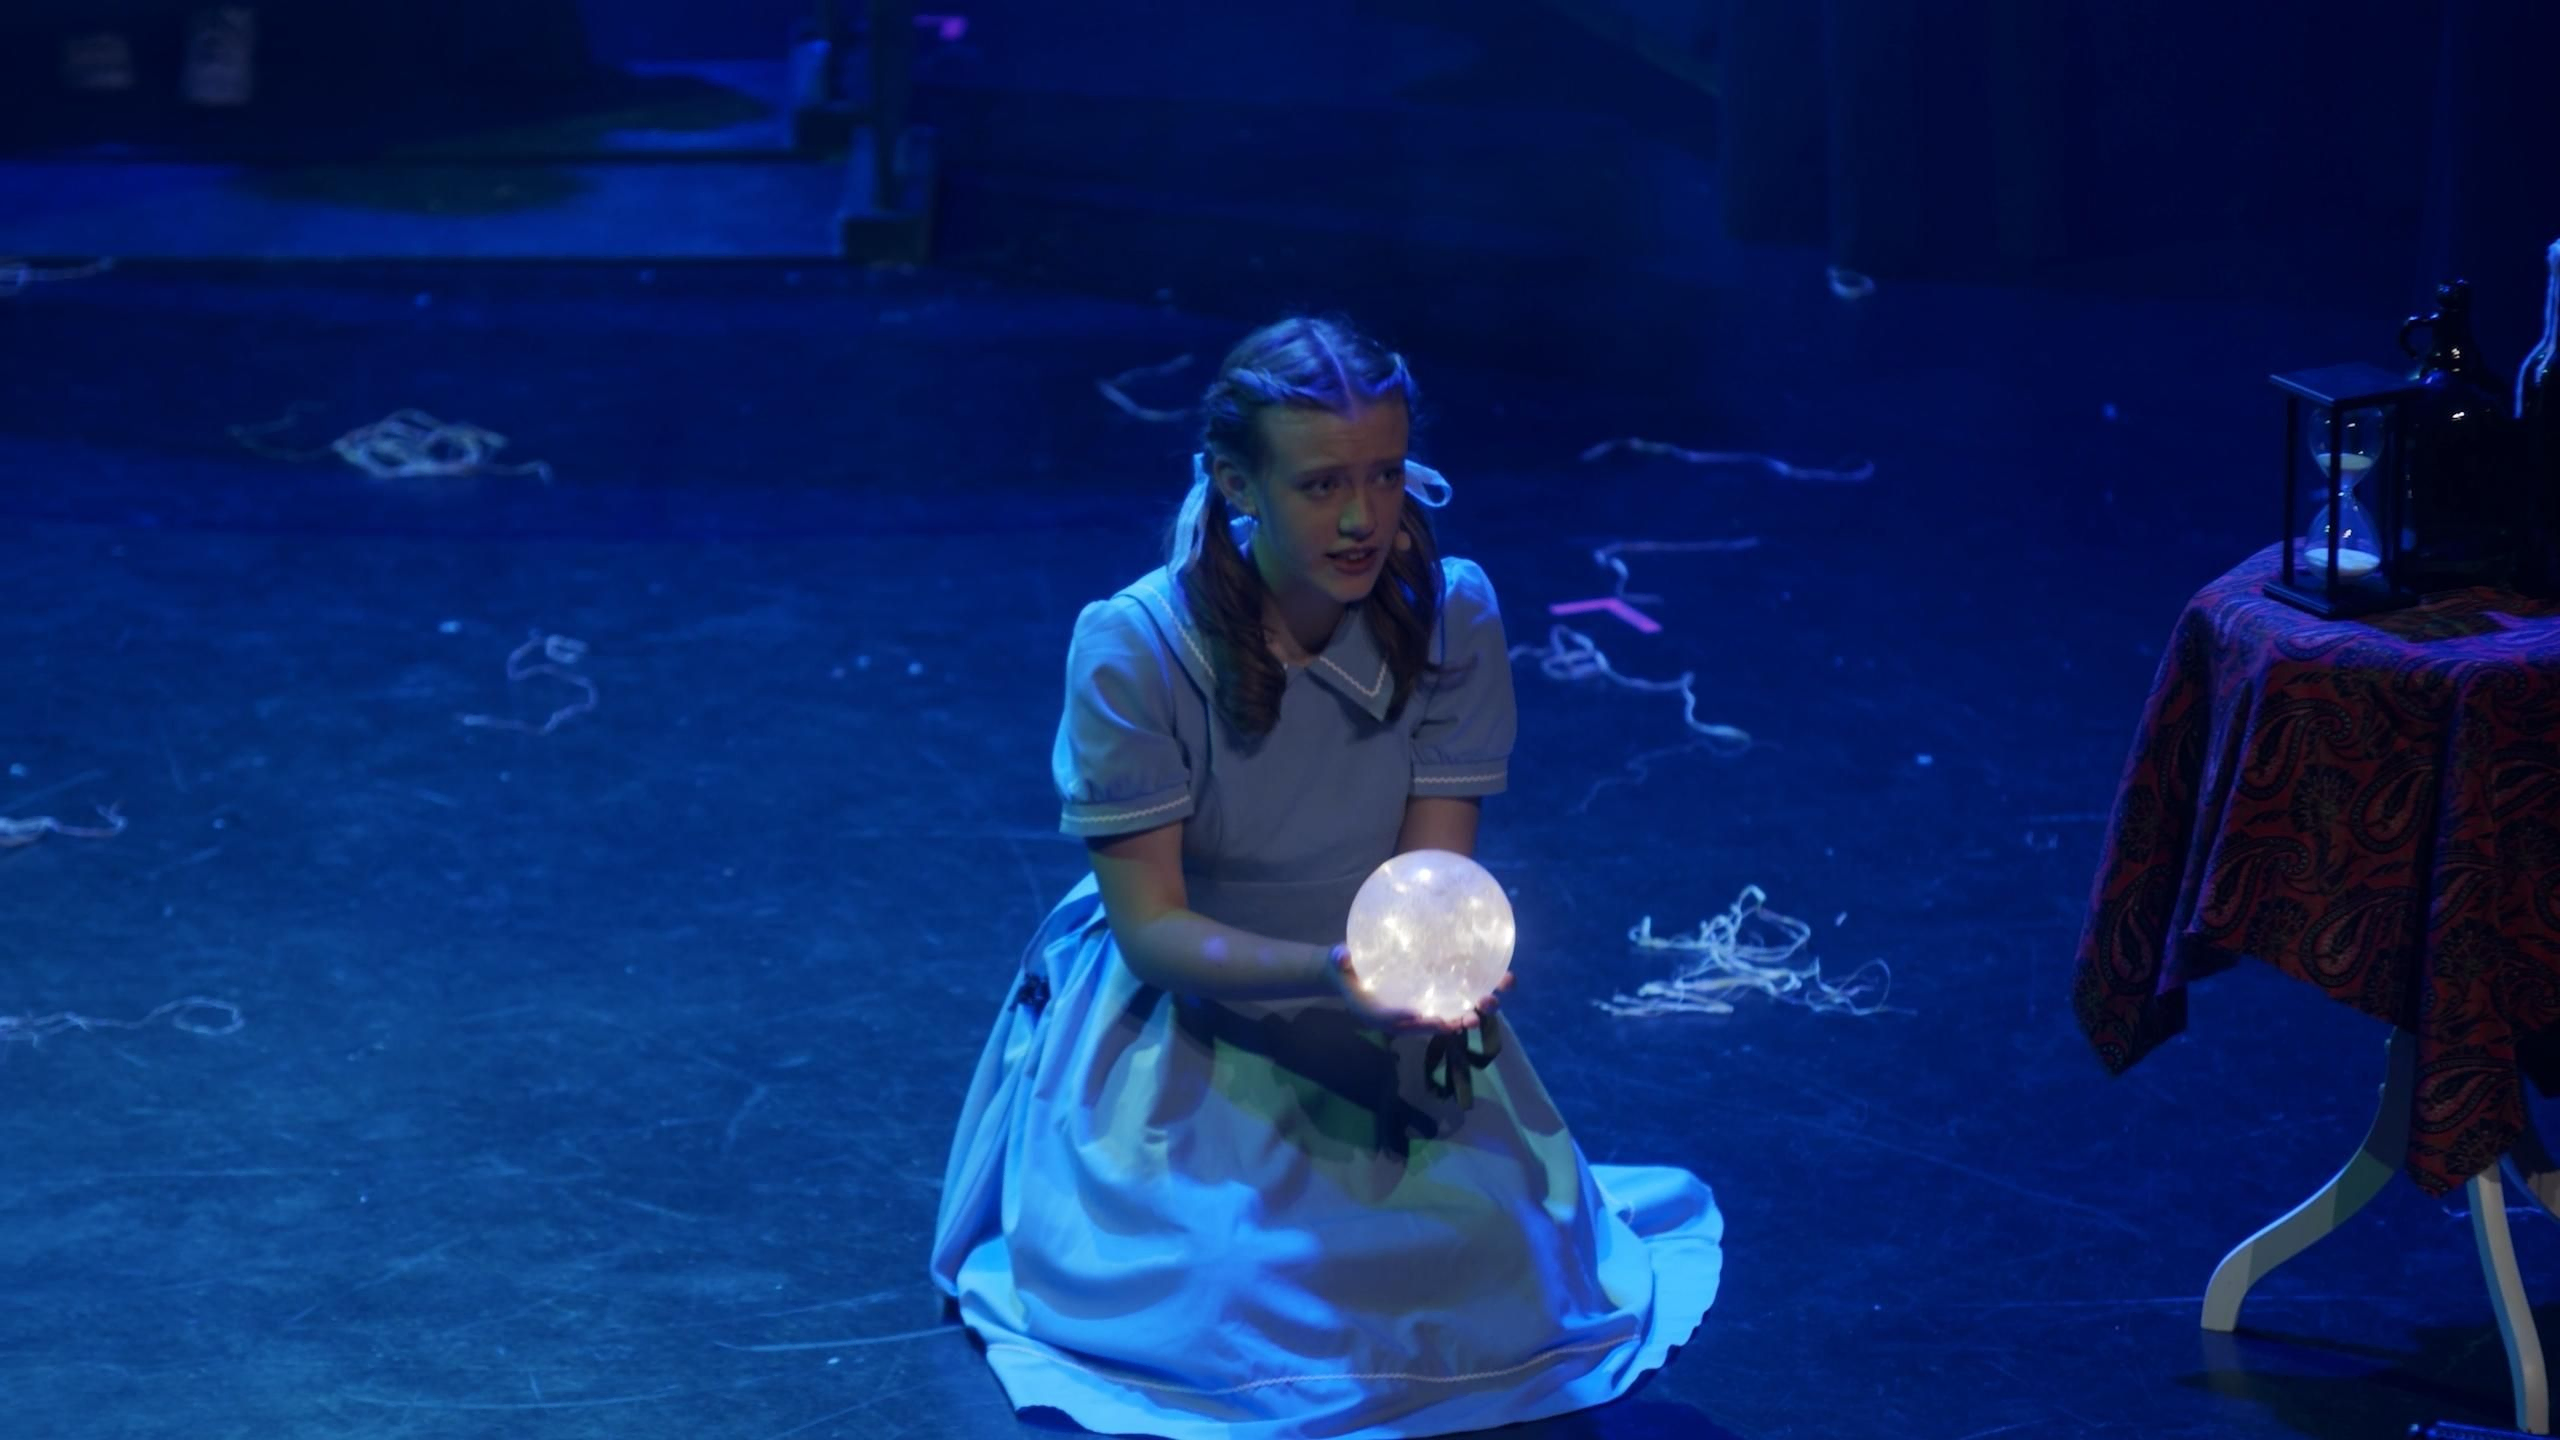 Dorothy sitter på gulv med lyskule i hendene